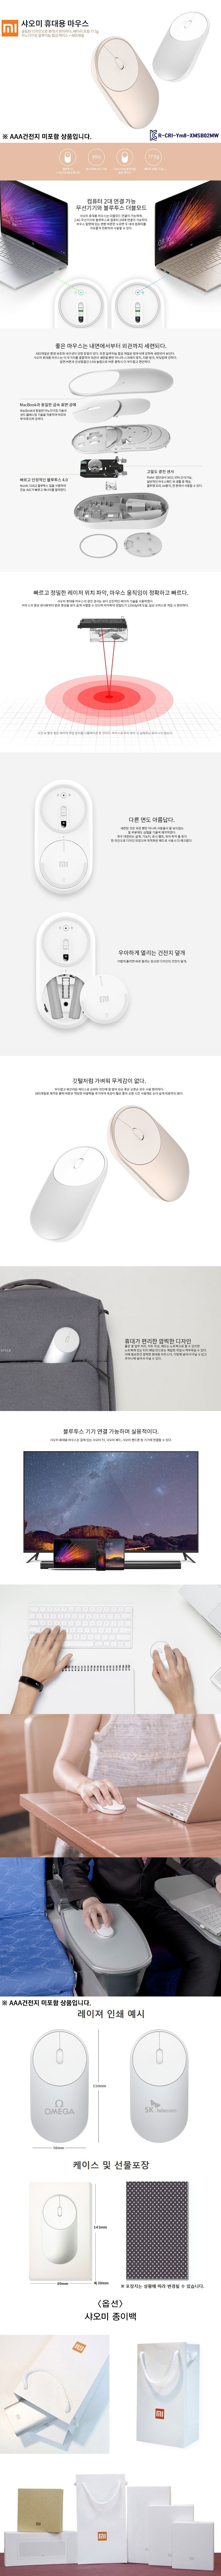 가볍고 심플한 디자인 샤오미 휴대용 무선 마우스